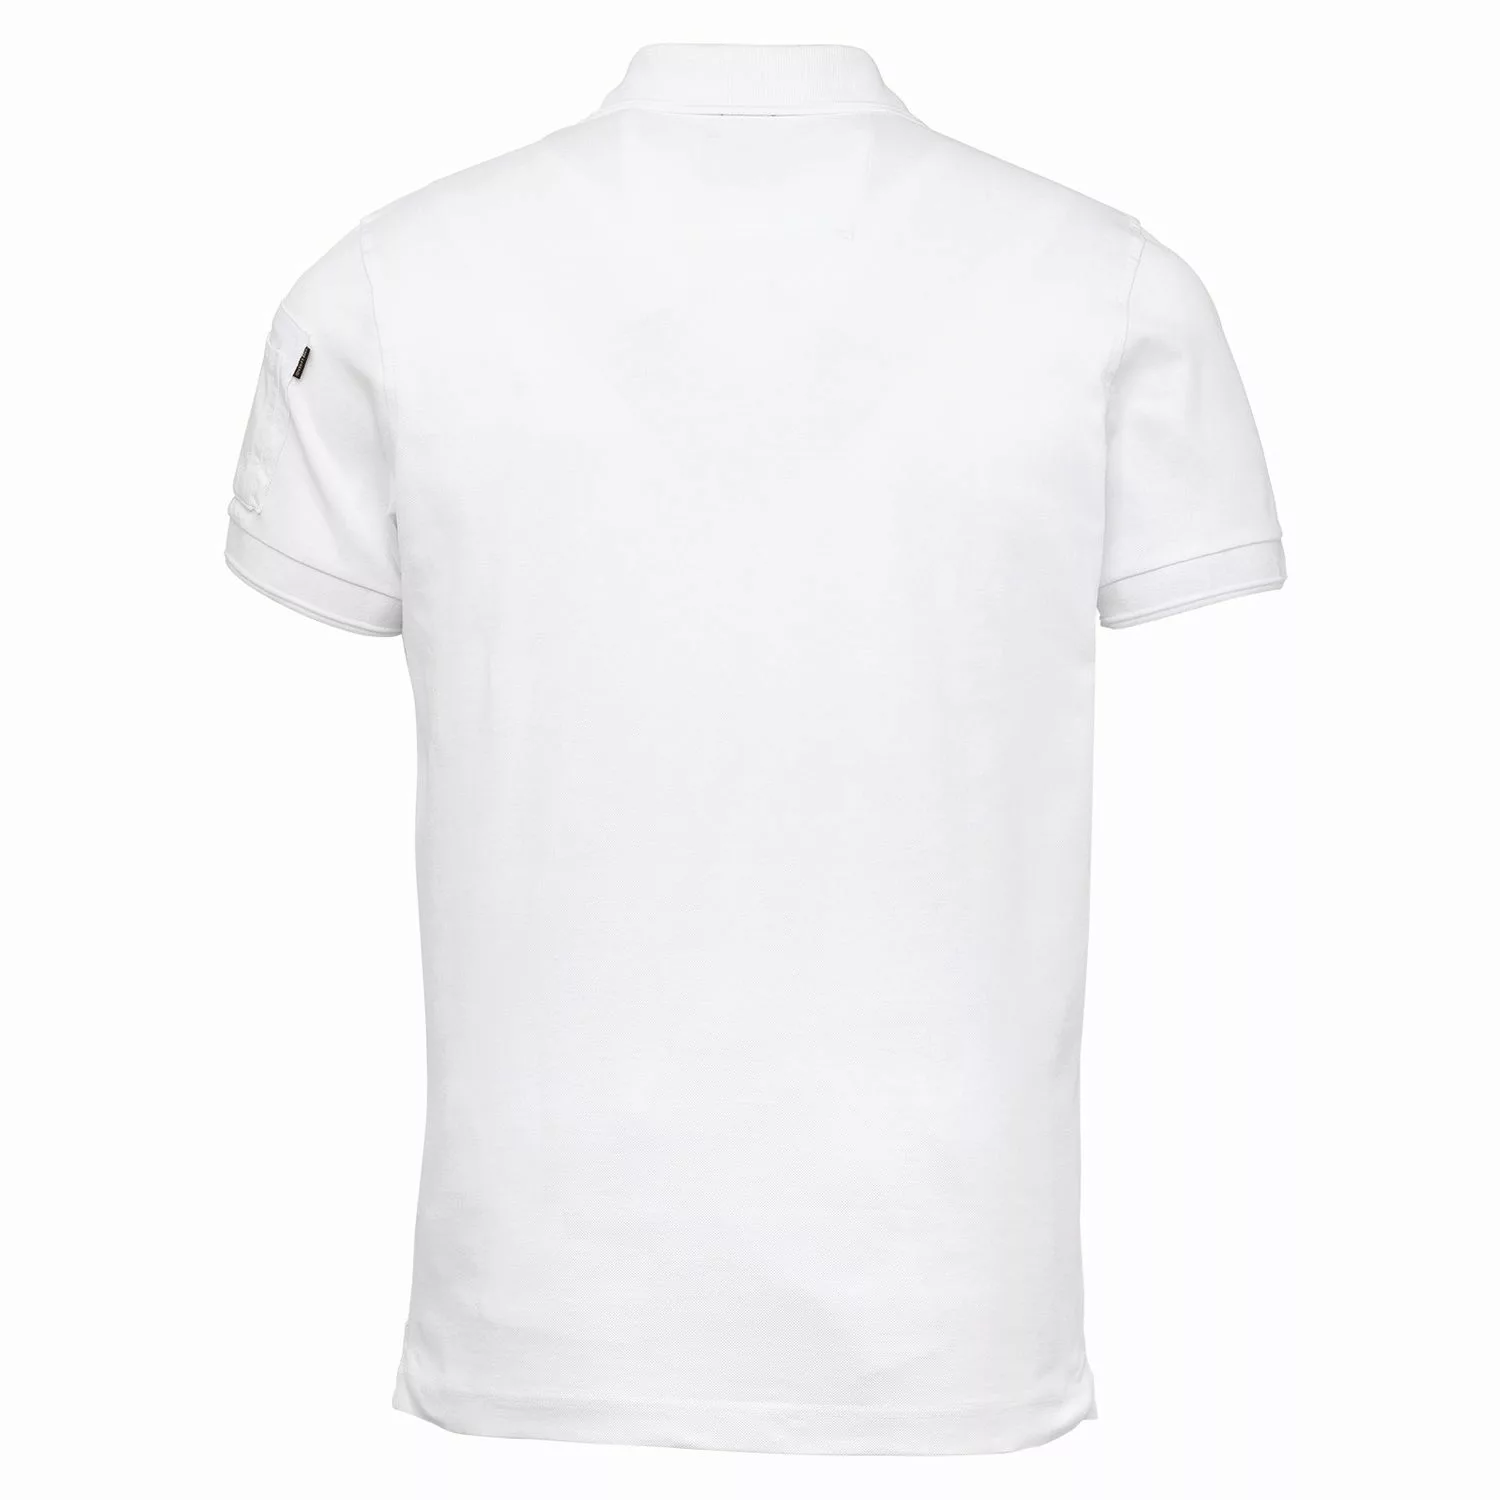 PME Legend Herren Poloshirt TRACKWAY - Regular Fit günstig online kaufen